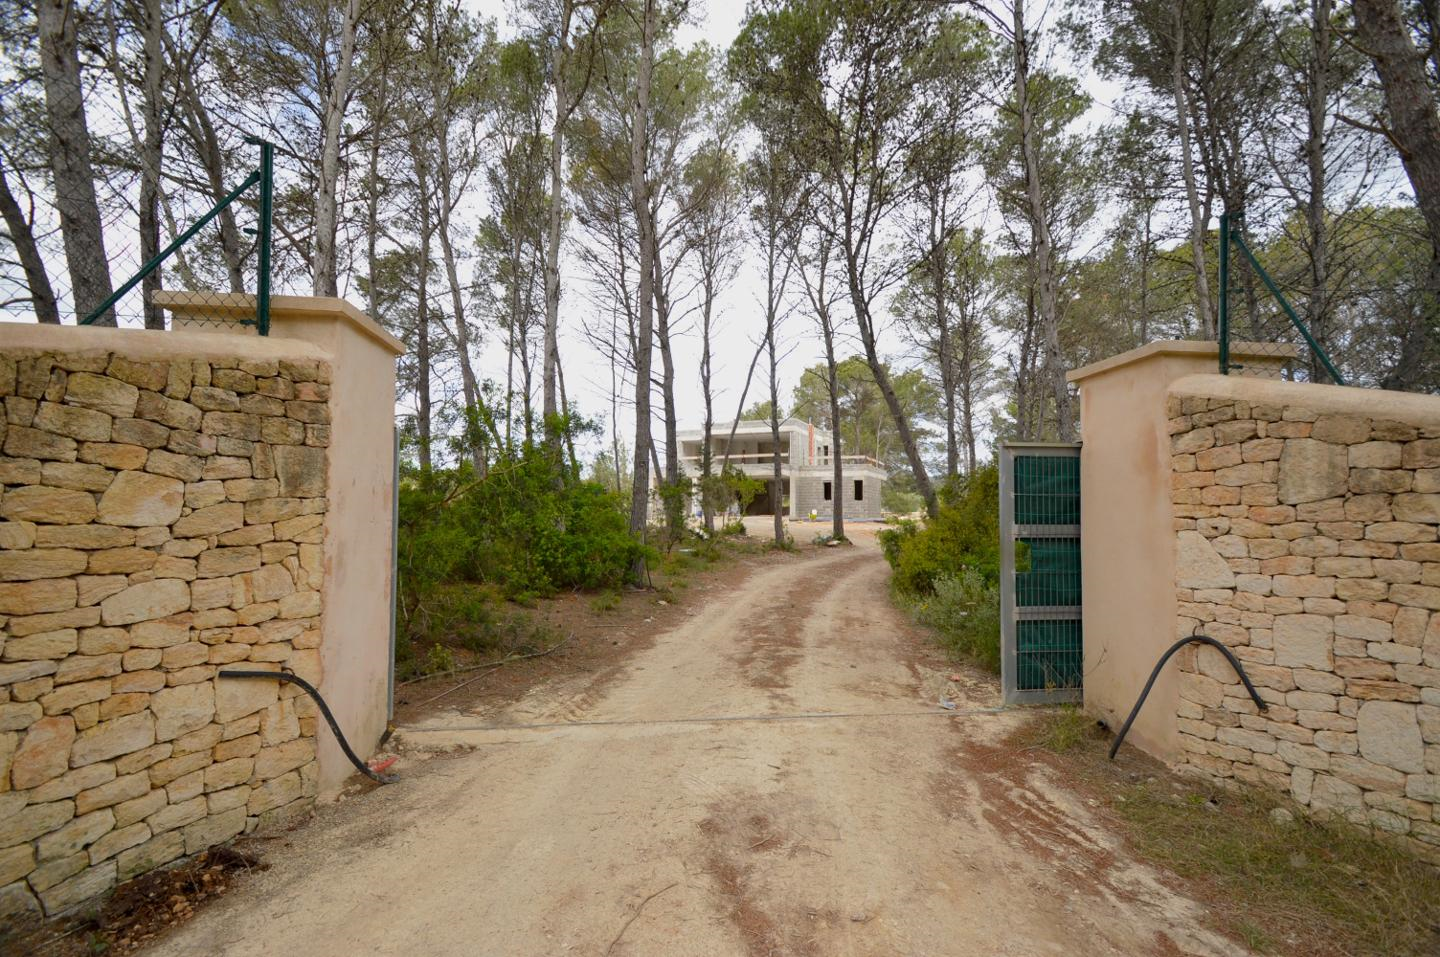 Villa in de buurt van de meest charmante dorpjes van het eiland - Santa Gerdrutis